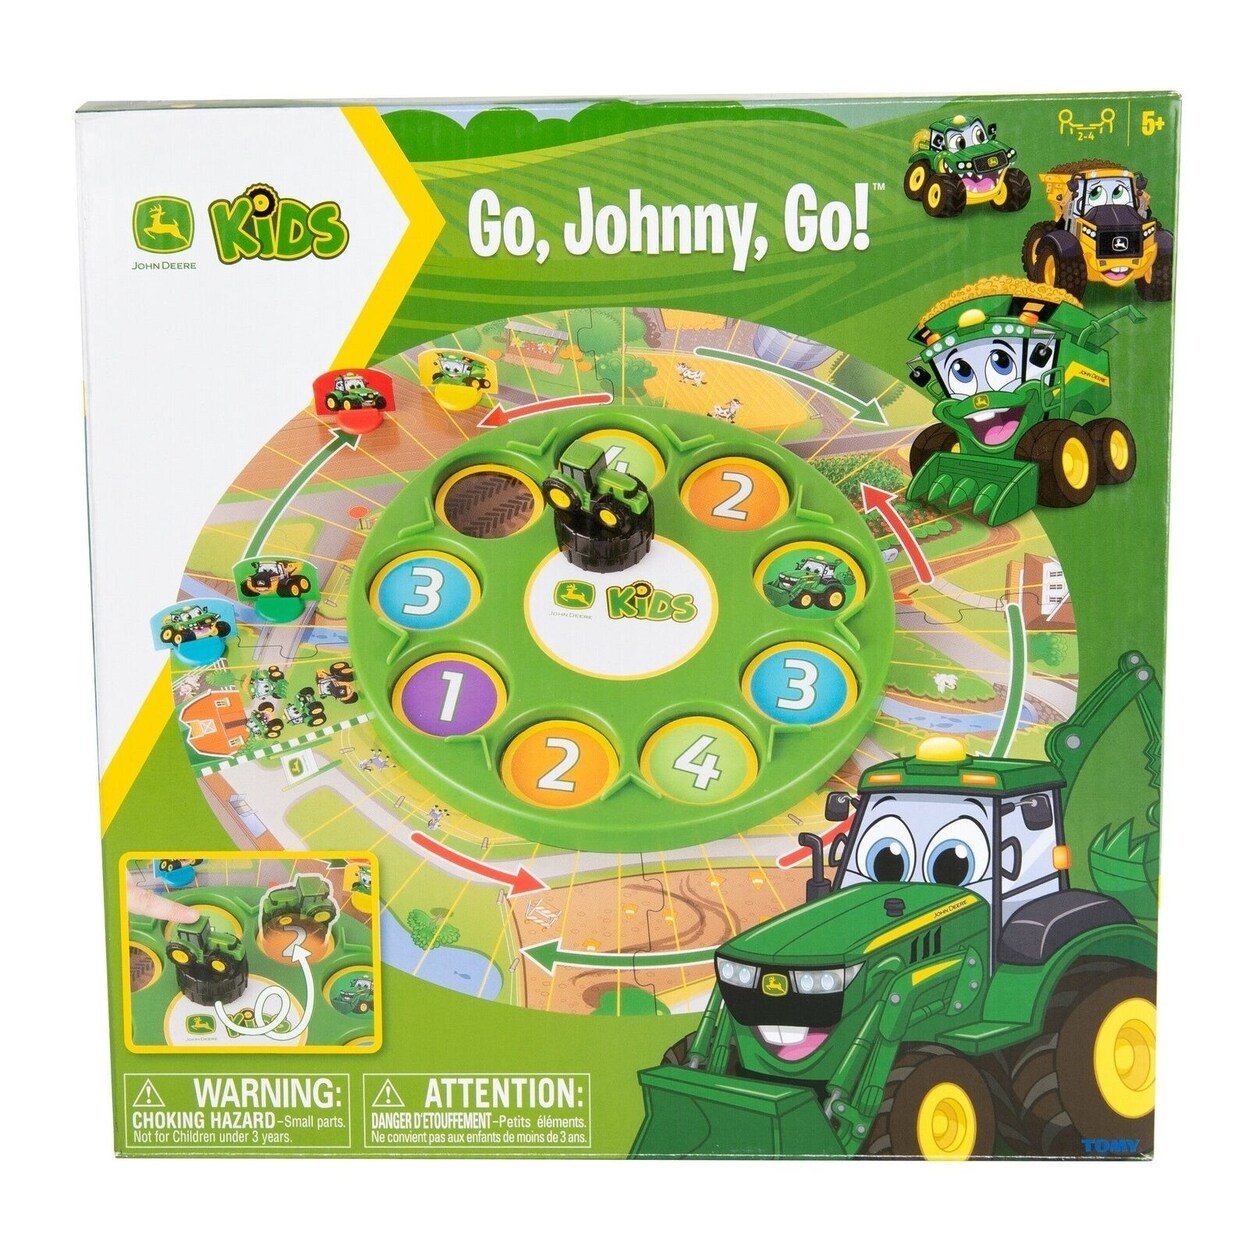 TOMY Go Johnny Go John Deere Kids Game